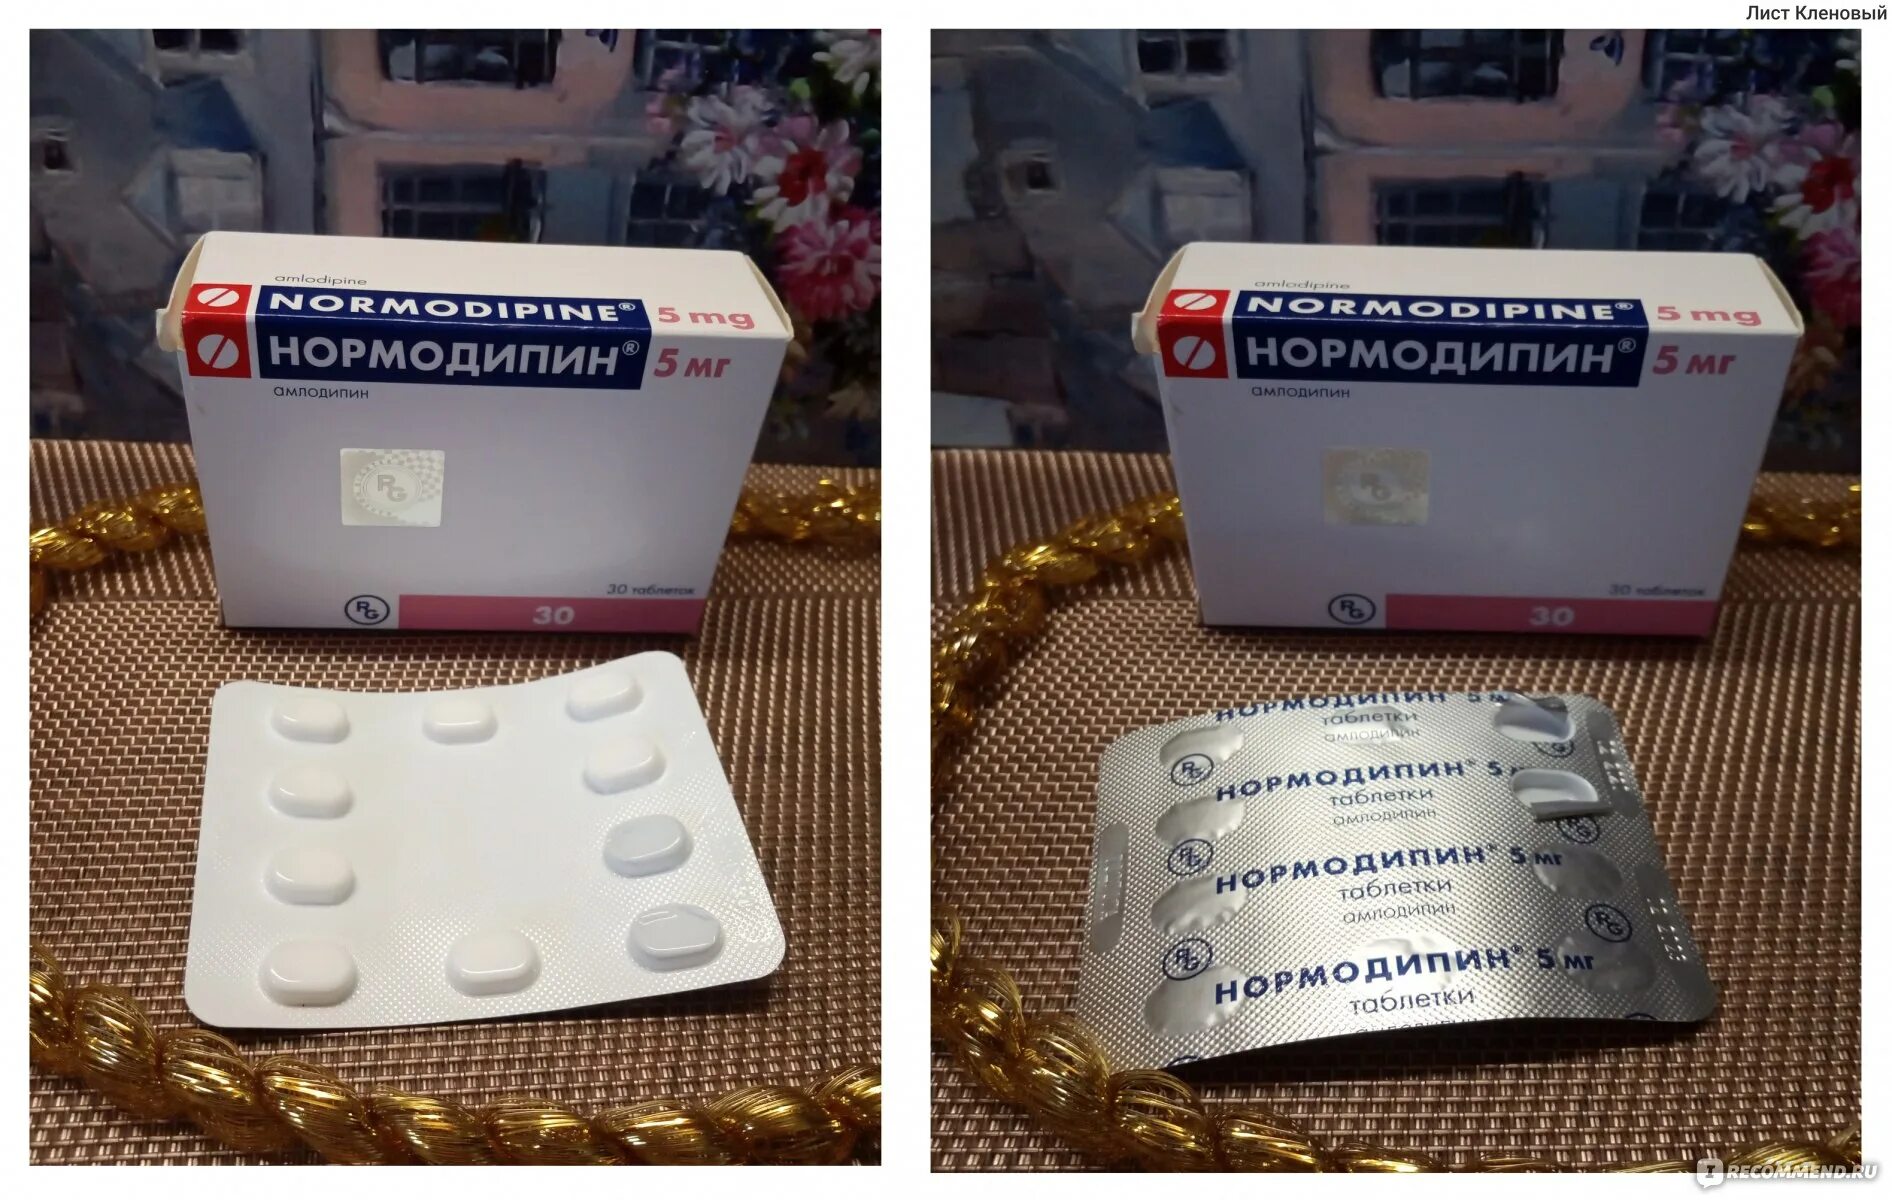 Нормодипин 10 аналоги. Нормодипин 2,5. Нормодипин 5 мг. Нормодипин табл. 5мг n30. Нормодипин таблетки 10мг.